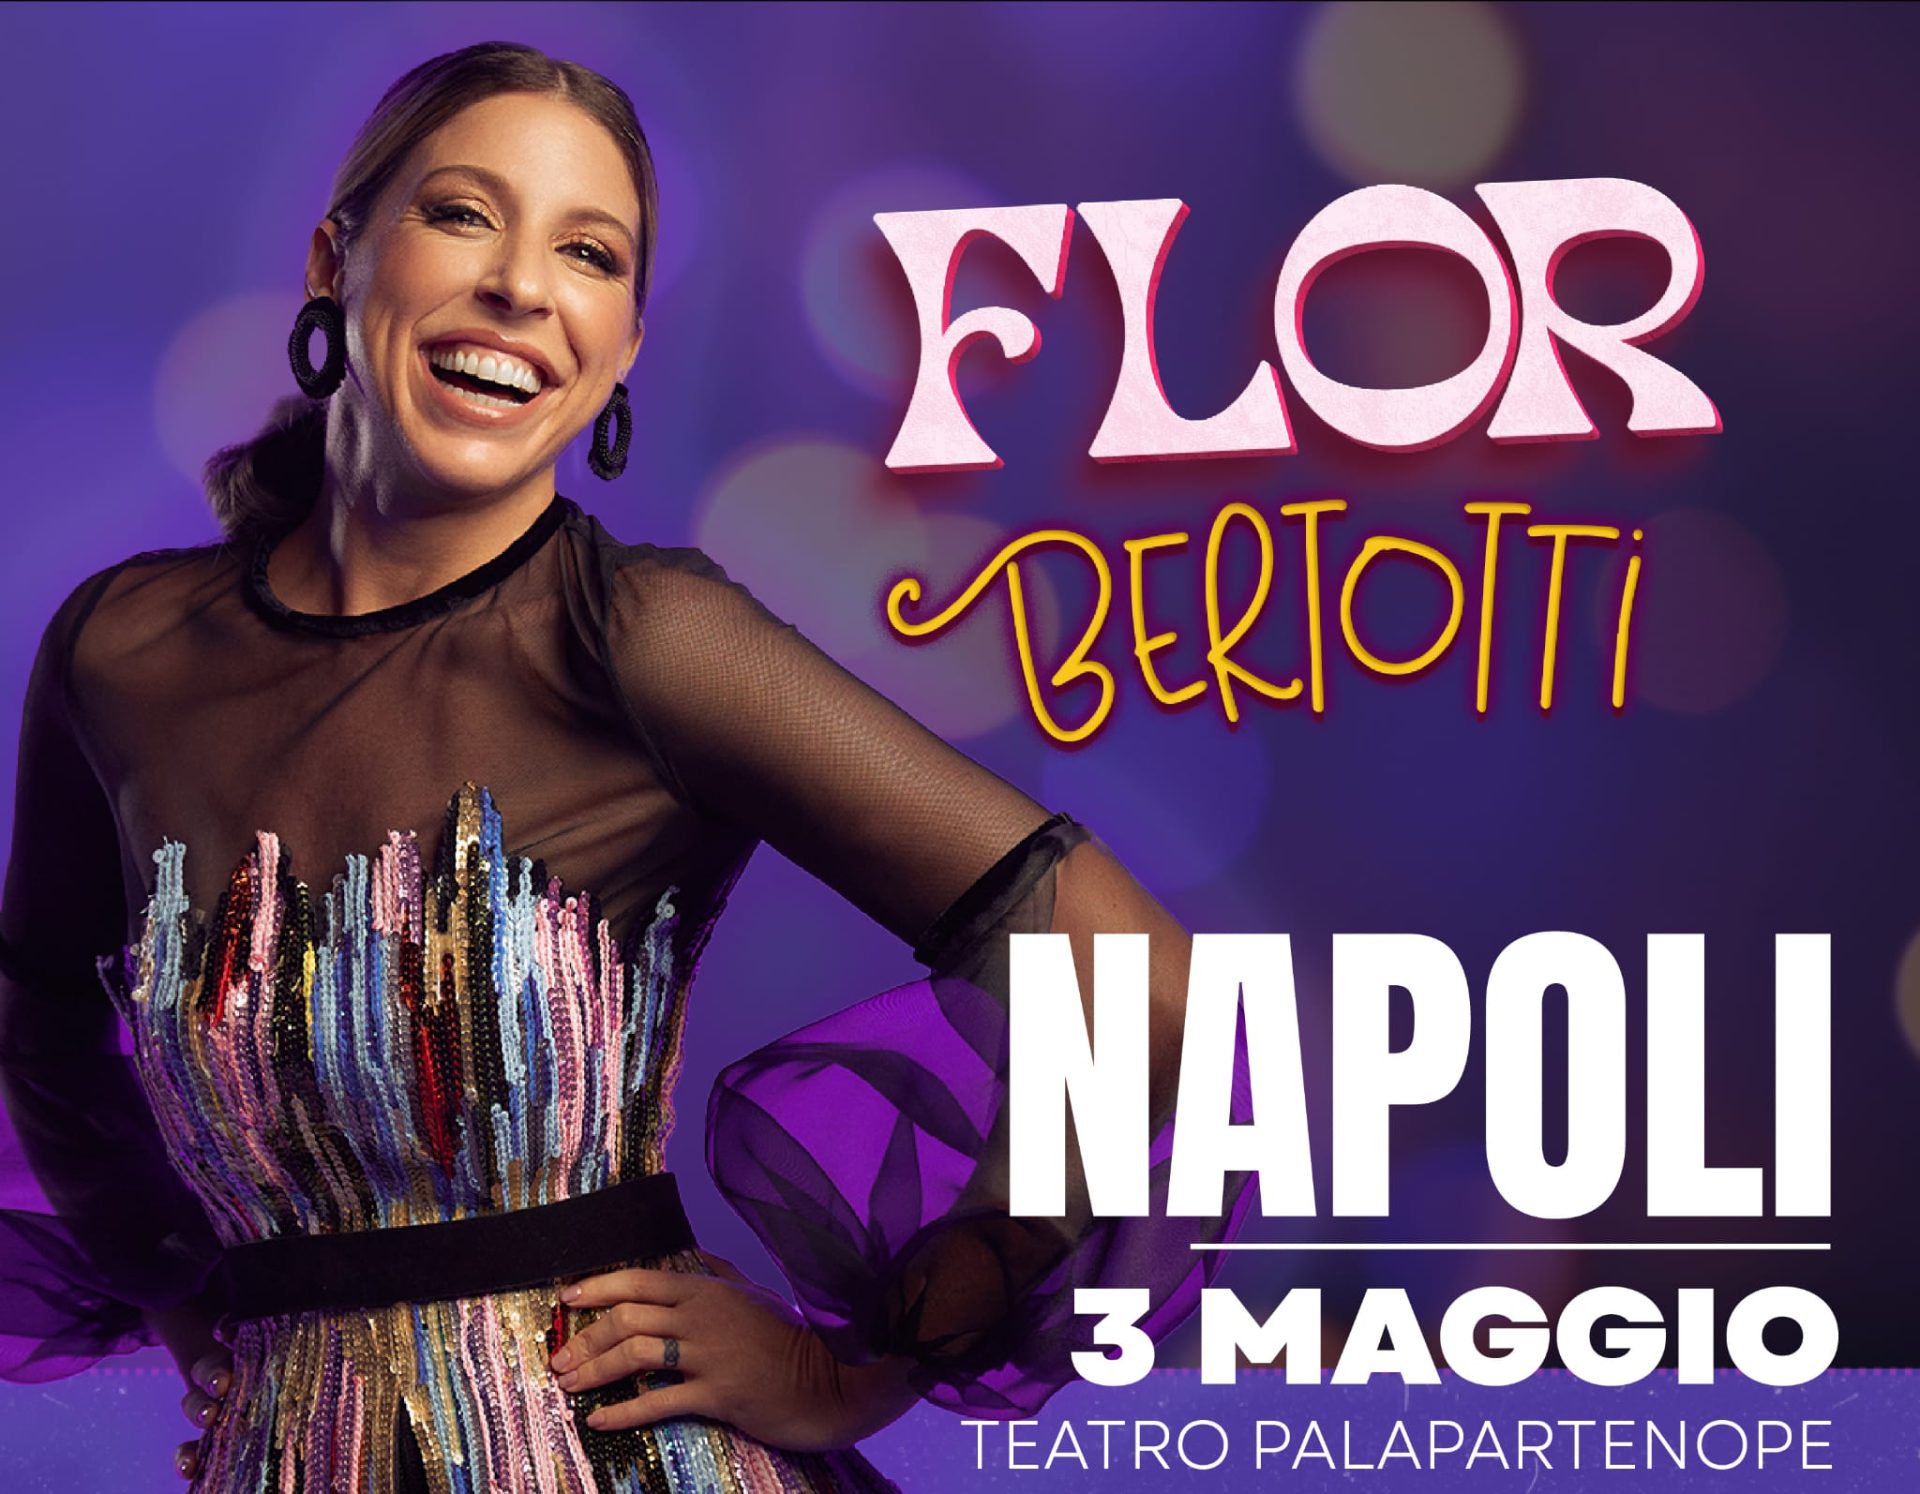 A Napoli arriva l'argentina Flor Bertotti, cantante e protagonista di serie tv